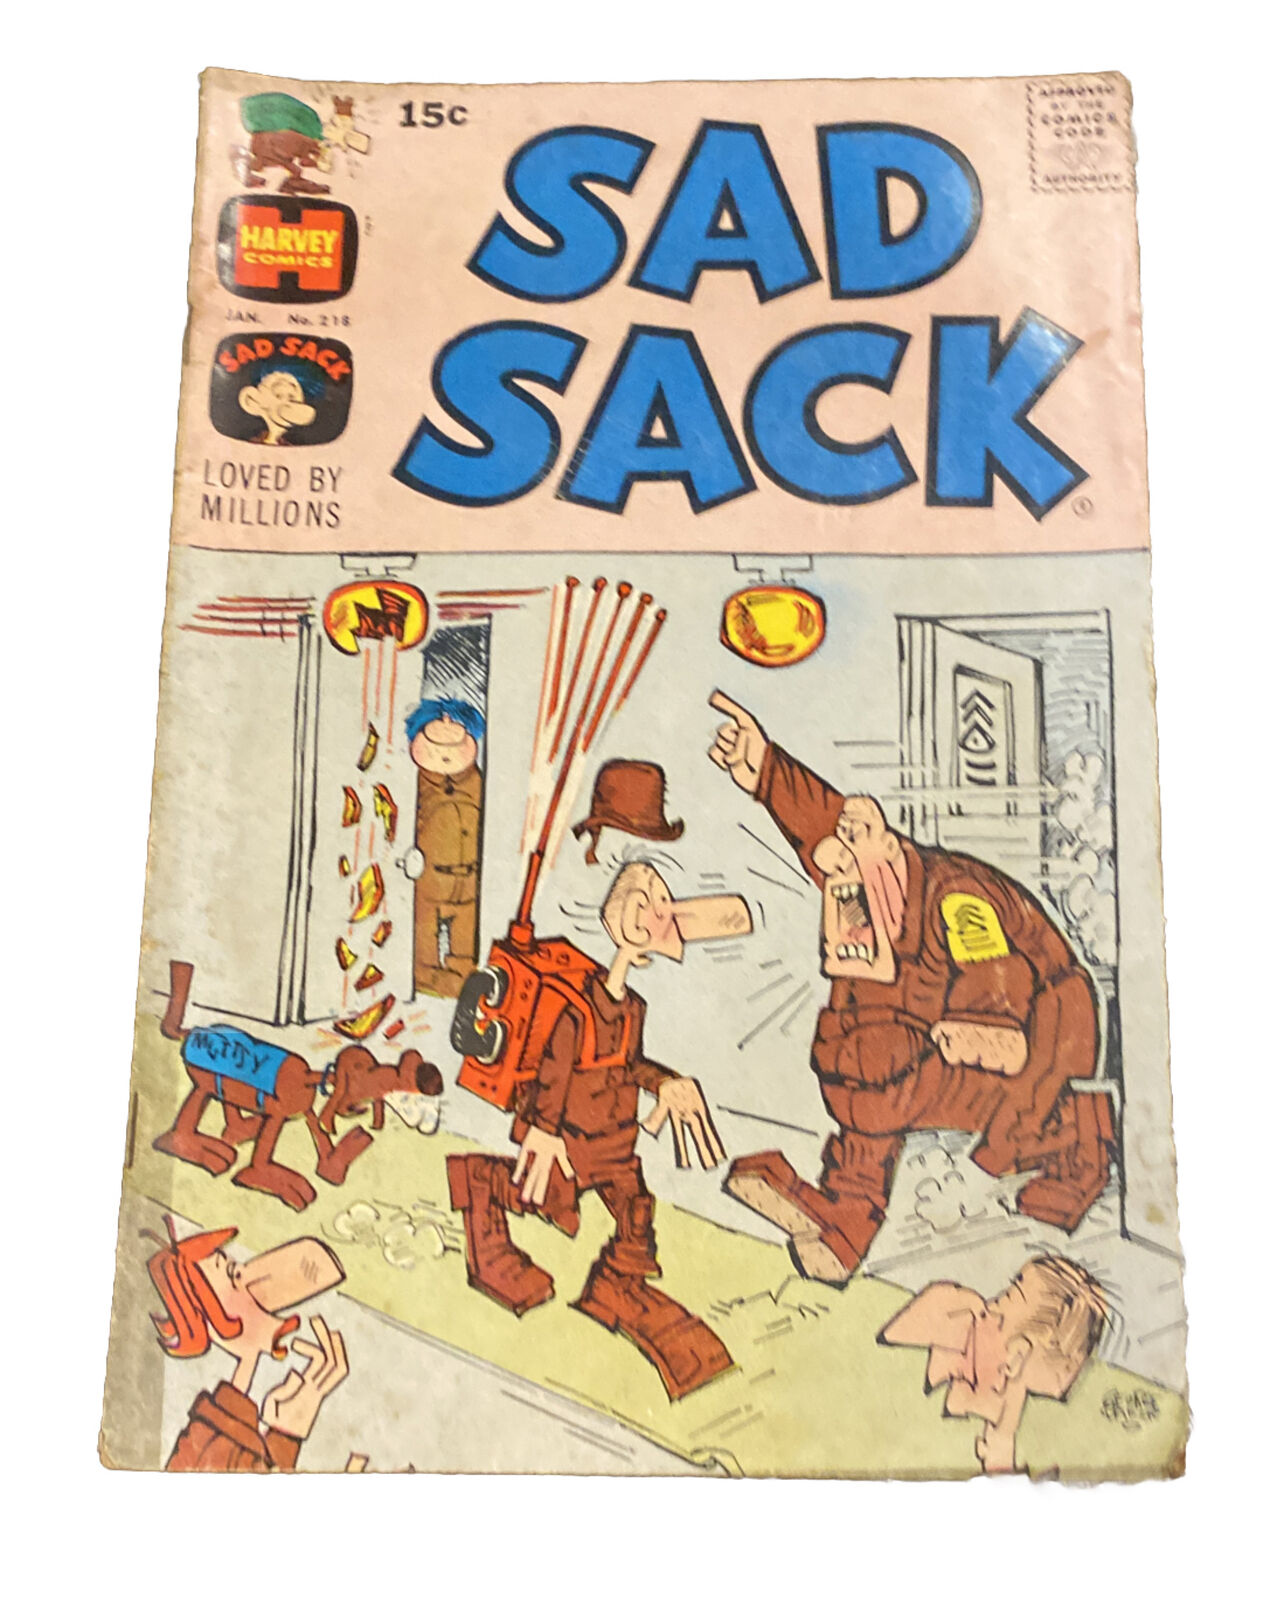 Sad Sack #218 January 1971. Harvey Comic